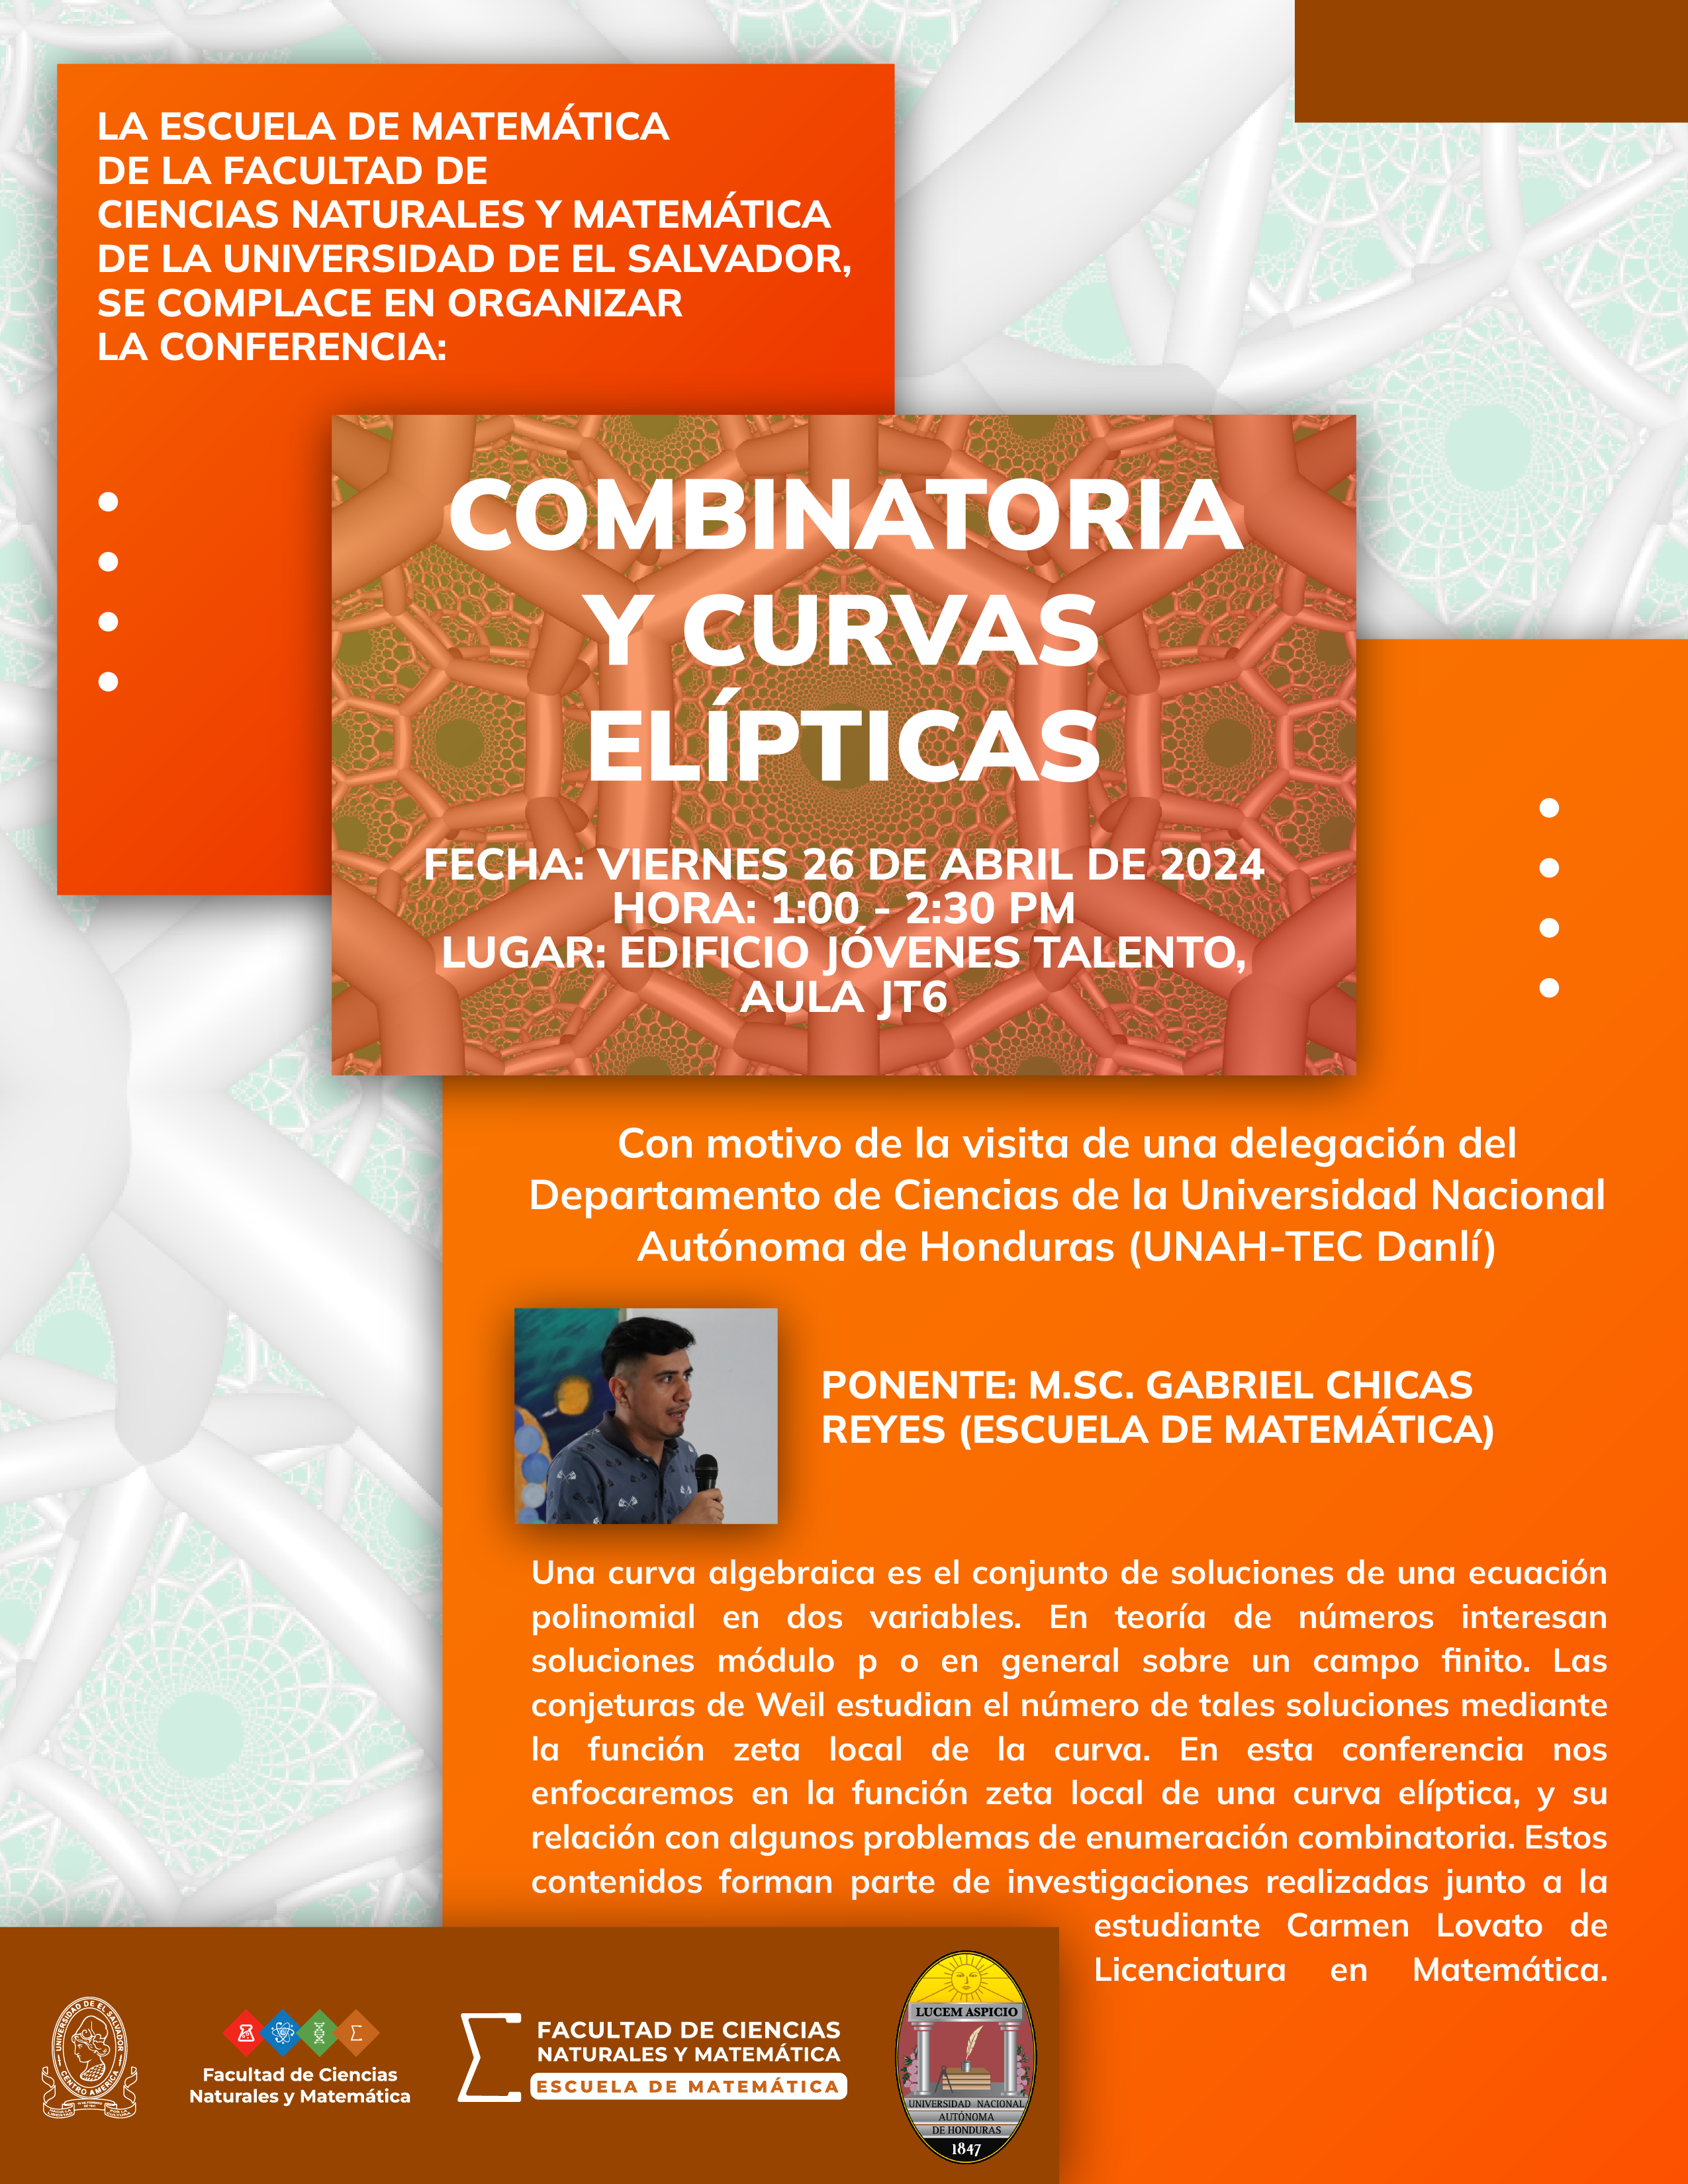 Conferencia: Combinatoria y curvas elípticas, impartida por: M.Sc. Gabriel Chicas Reyes.